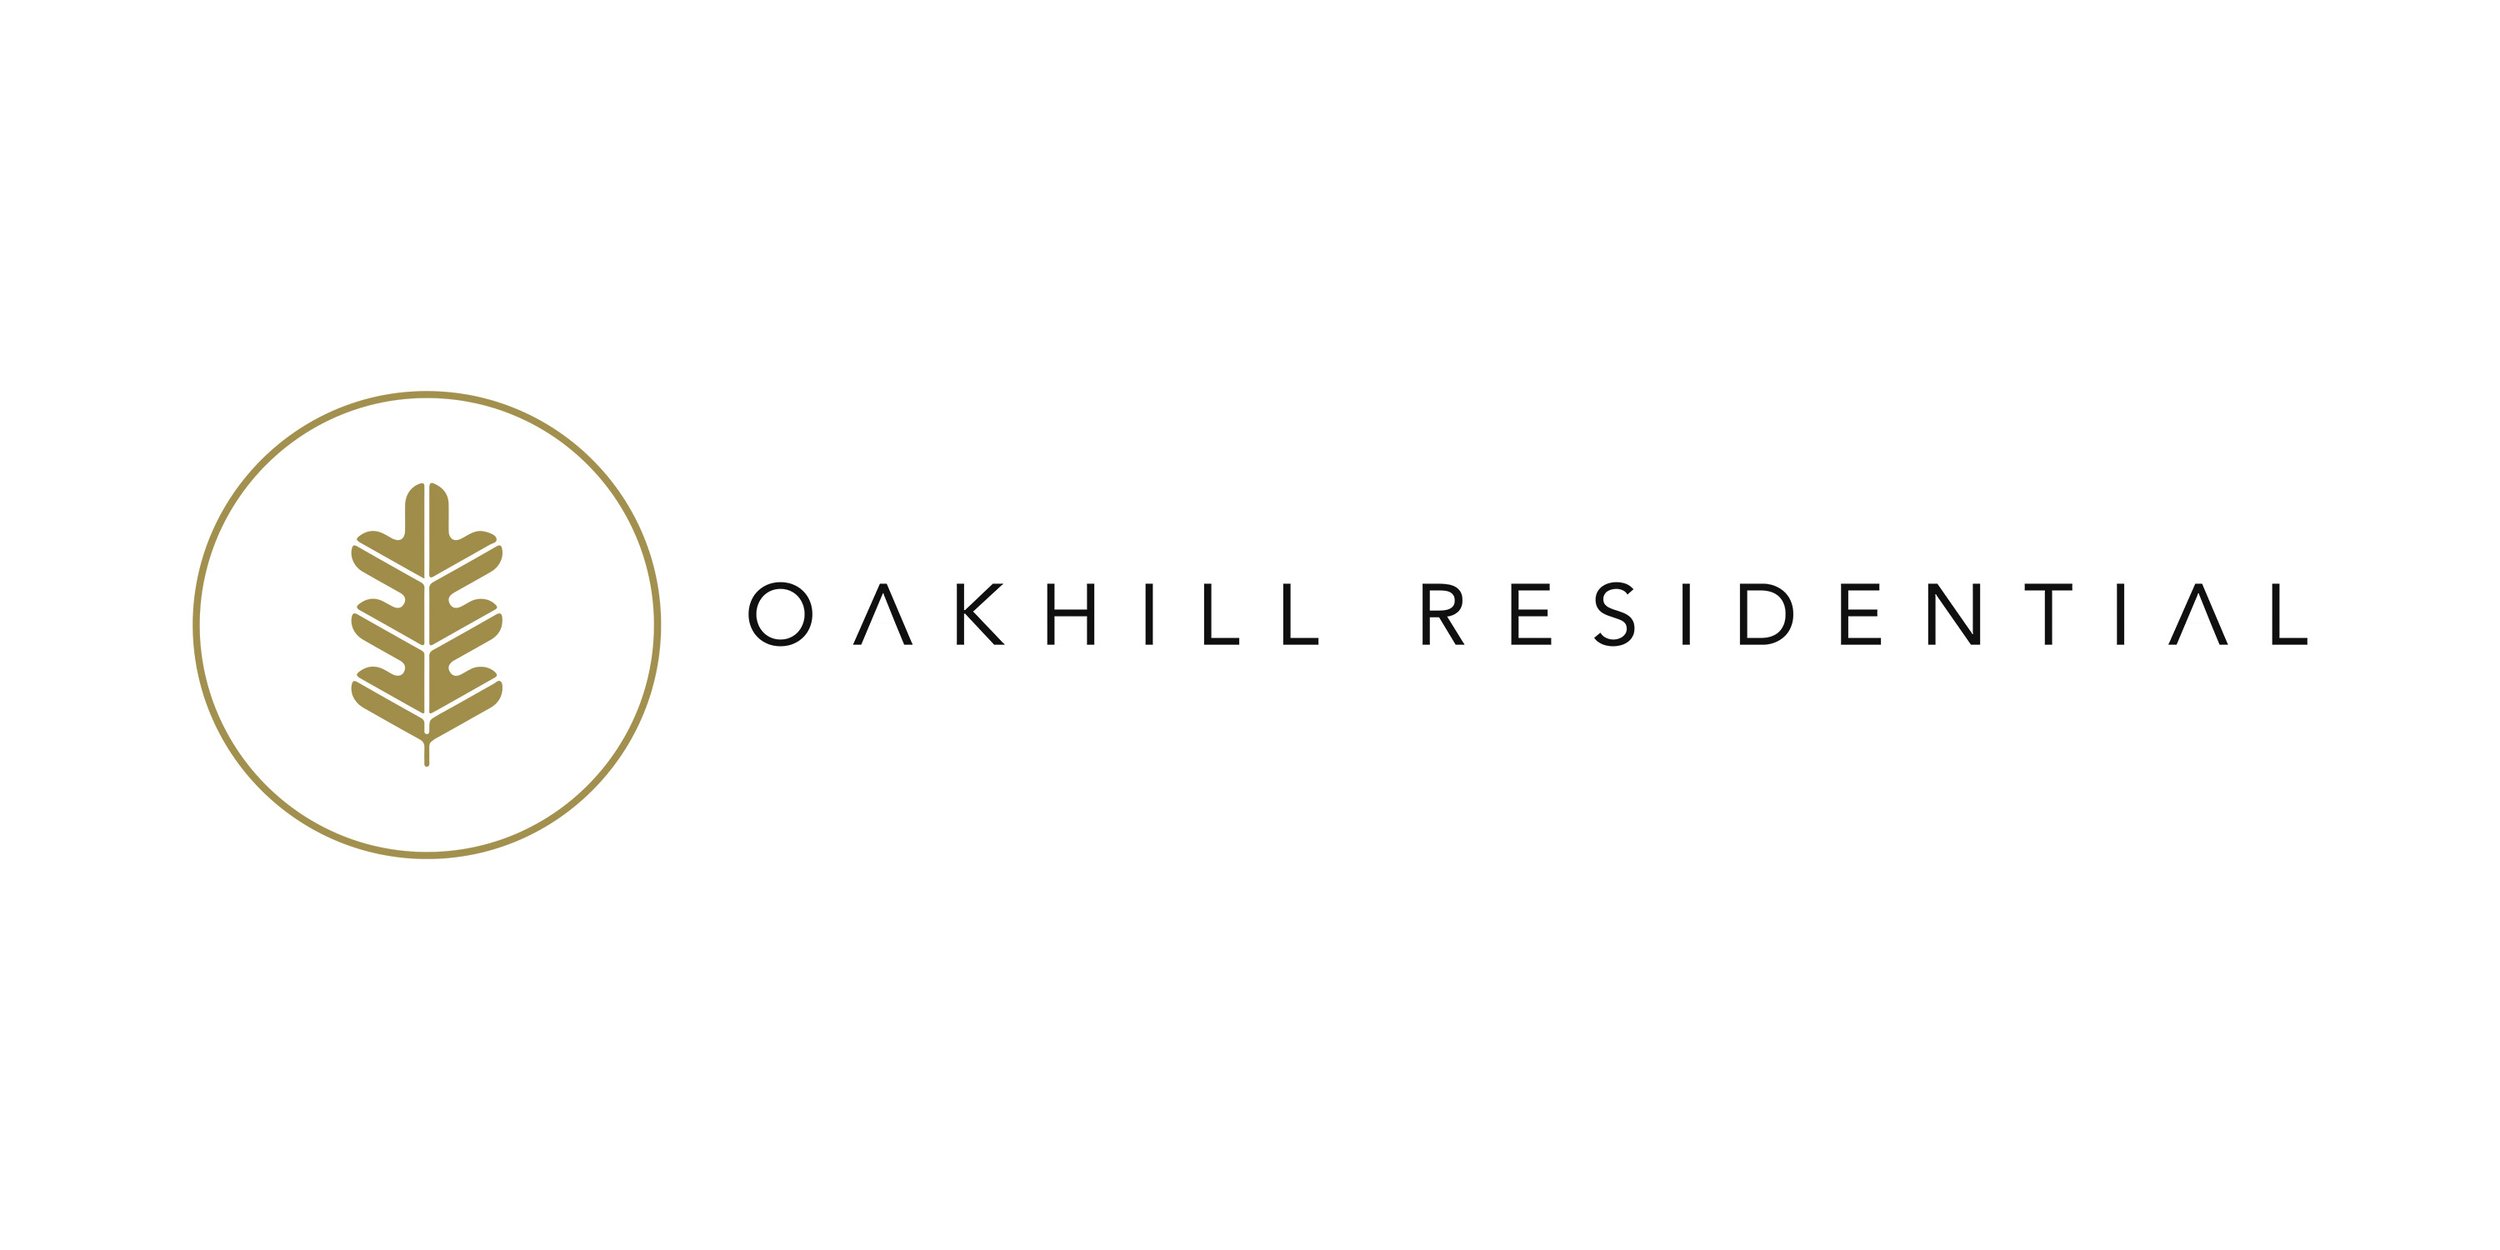 Oakhill Residential.jpg